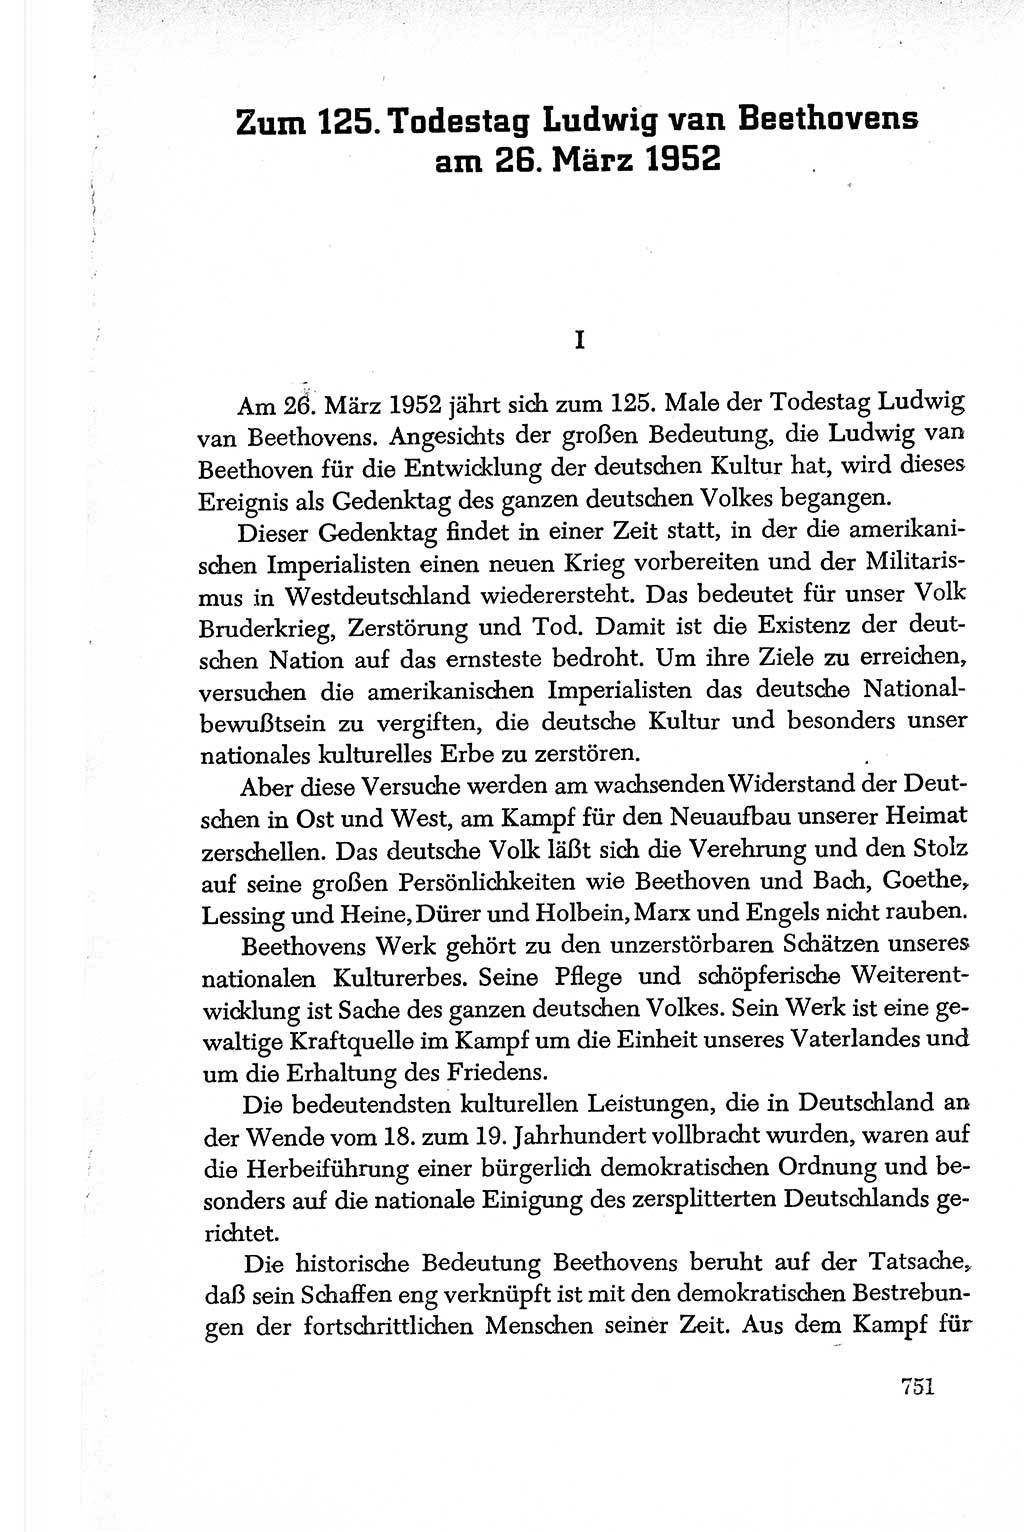 Dokumente der Sozialistischen Einheitspartei Deutschlands (SED) [Deutsche Demokratische Republik (DDR)] 1950-1952, Seite 751 (Dok. SED DDR 1950-1952, S. 751)